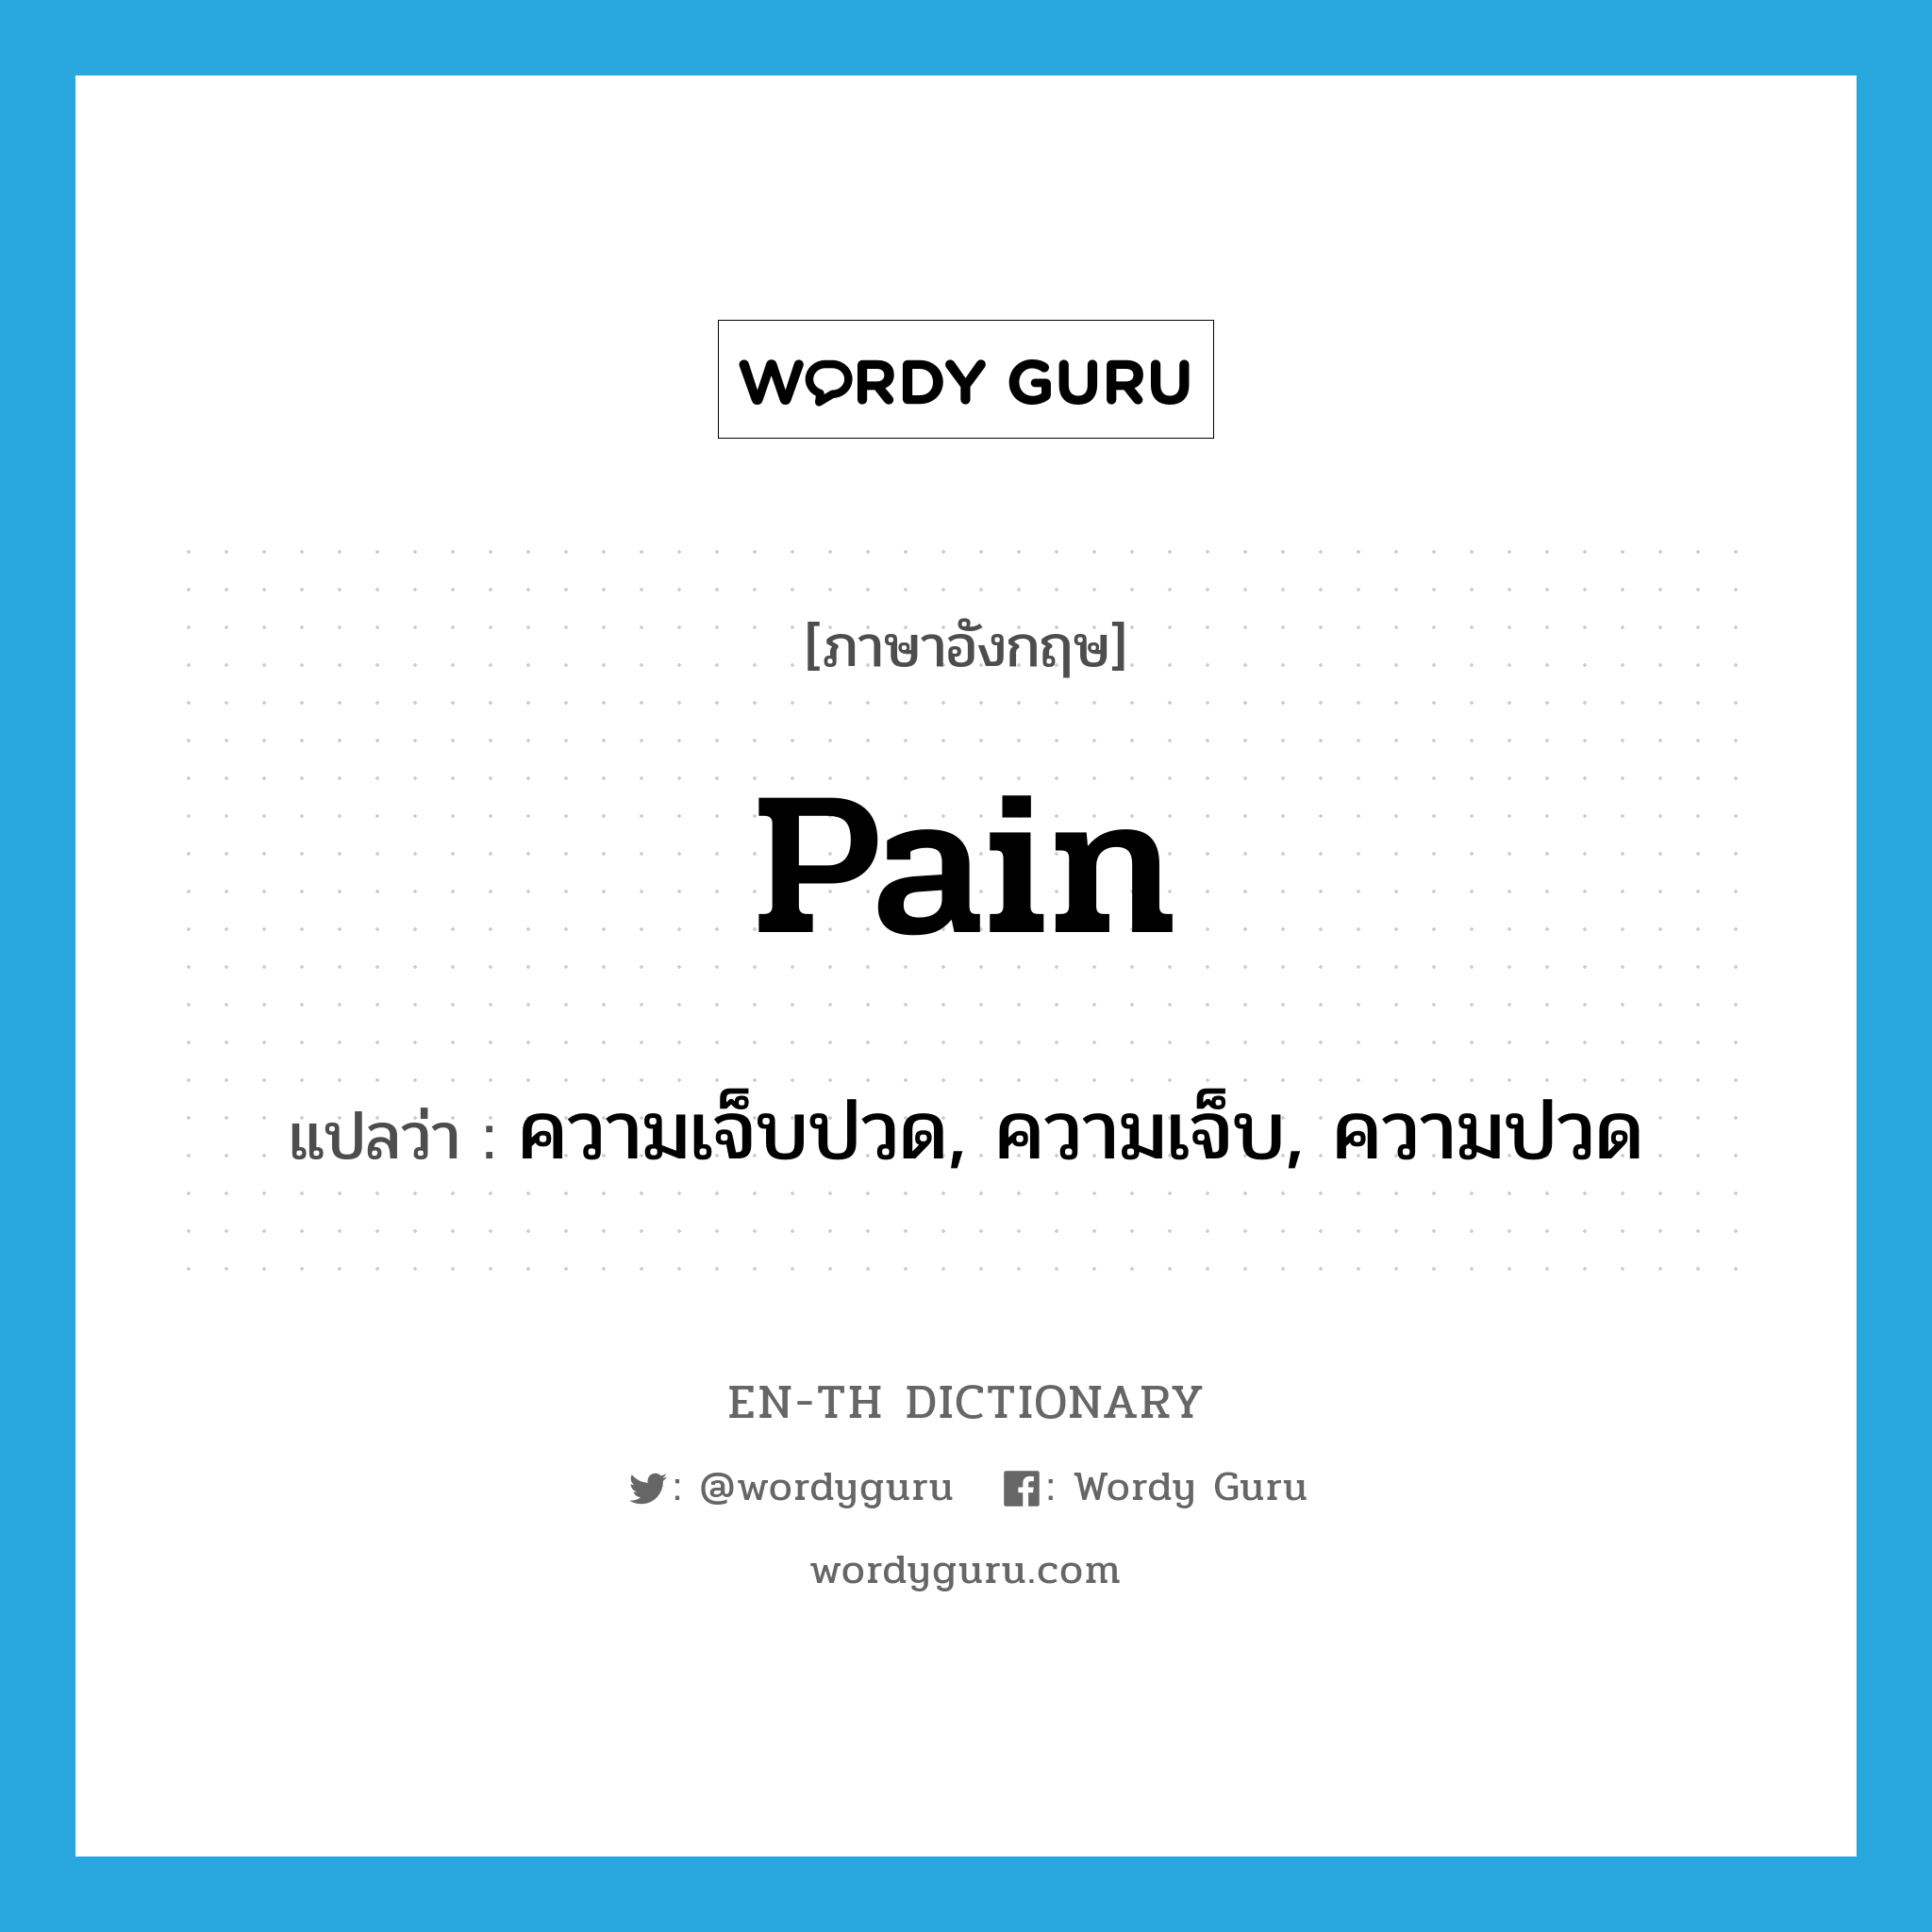 ความเจ็บปวด, ความเจ็บ, ความปวด ภาษาอังกฤษ?, คำศัพท์ภาษาอังกฤษ ความเจ็บปวด, ความเจ็บ, ความปวด แปลว่า pain ประเภท N หมวด N